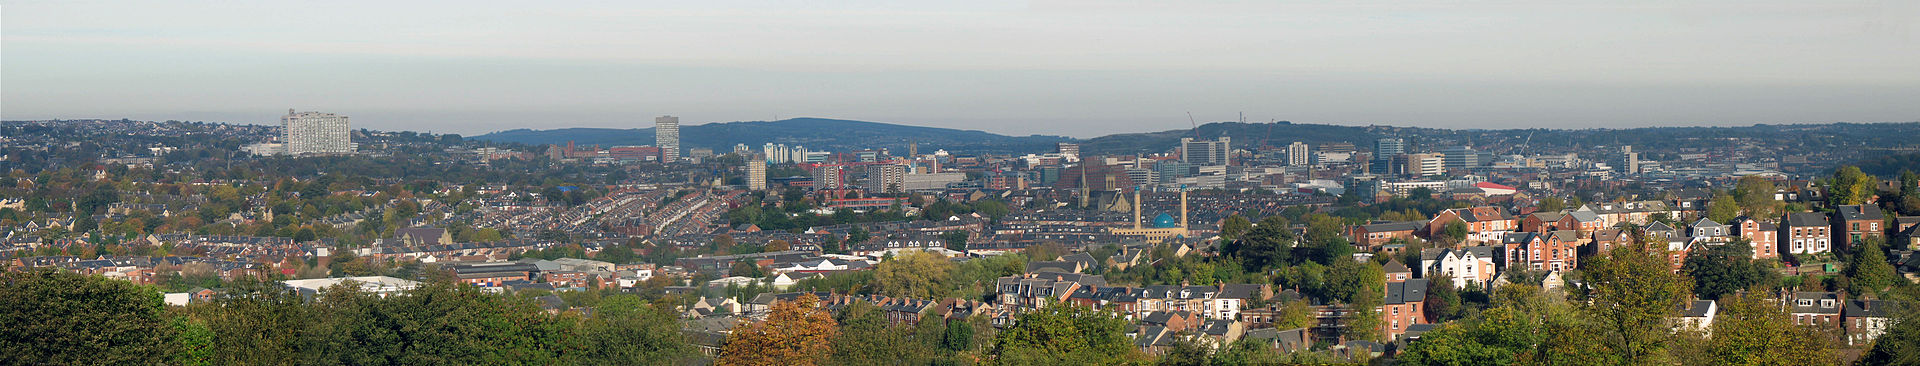 Sheffield, en.wikipedia.org